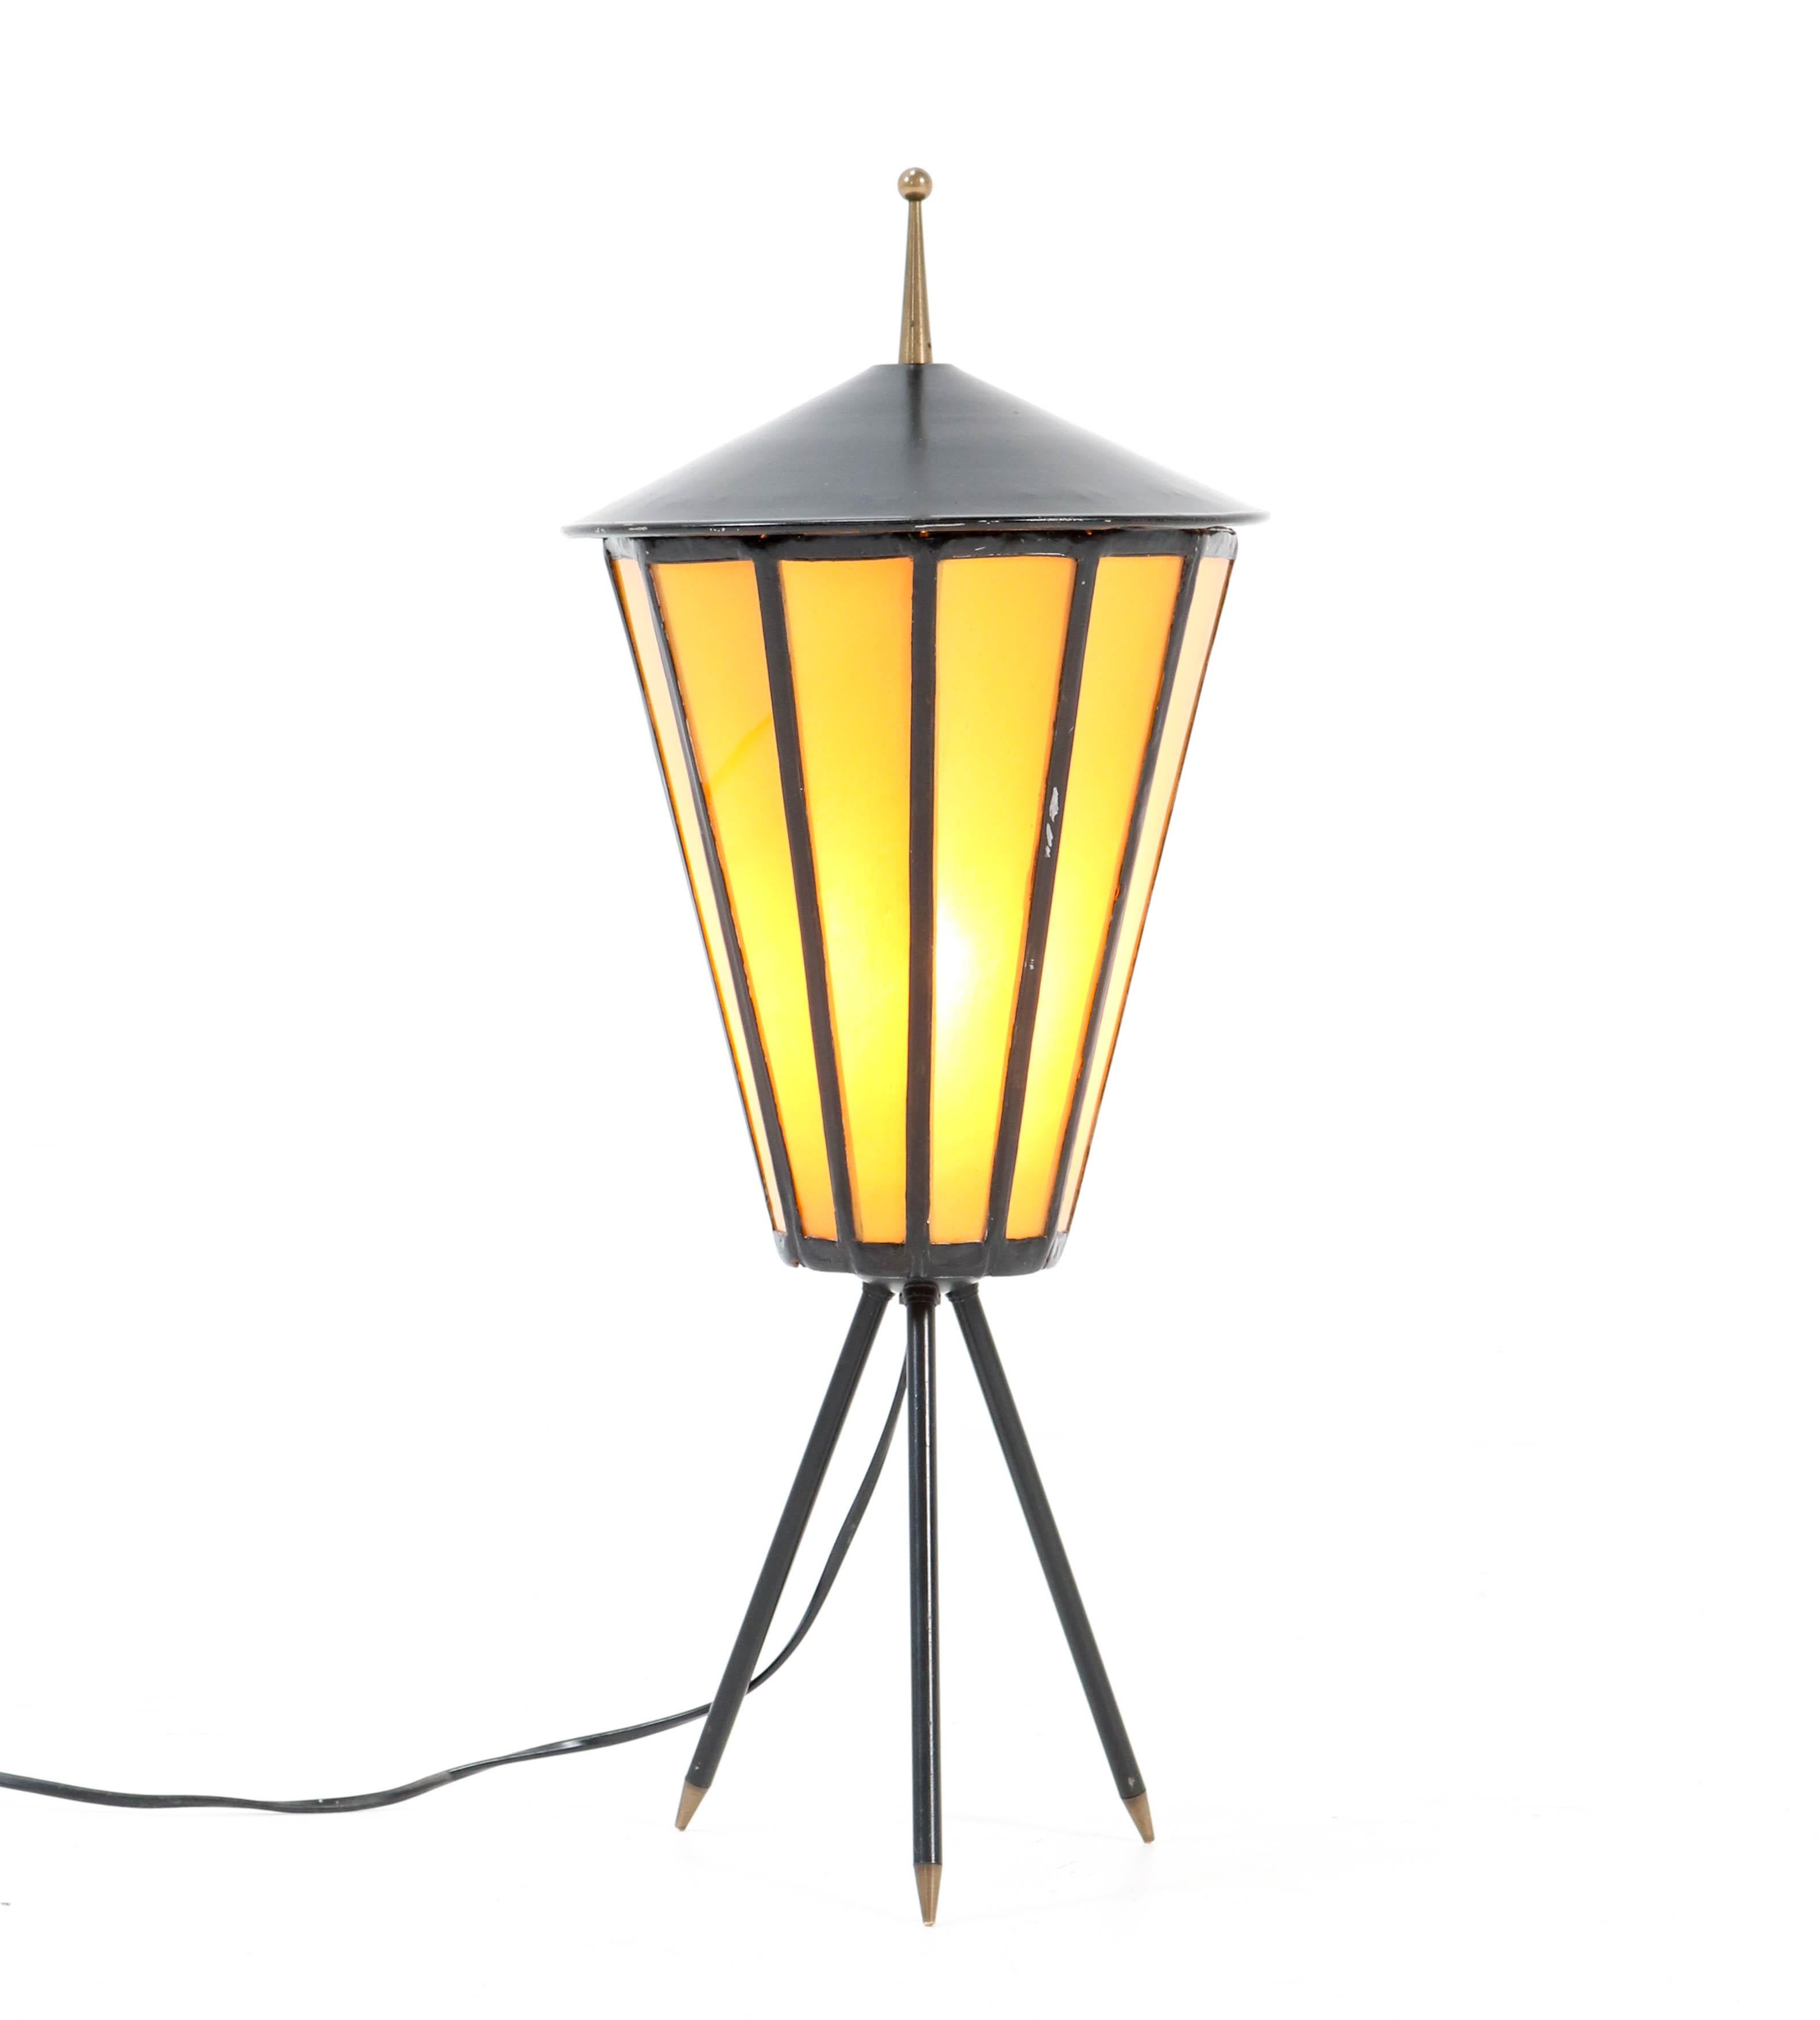 Atemberaubende Mid-Century Modern Tischlampe.
Auffälliges französisches Design aus den 1950er Jahren.
Schwarz lackierter Metallsockel auf dreibeinigen Beinen.
Original gelb gefärbtes Glas.
Umverdrahtet mit einer Fassung für eine E27-Glühbirne.